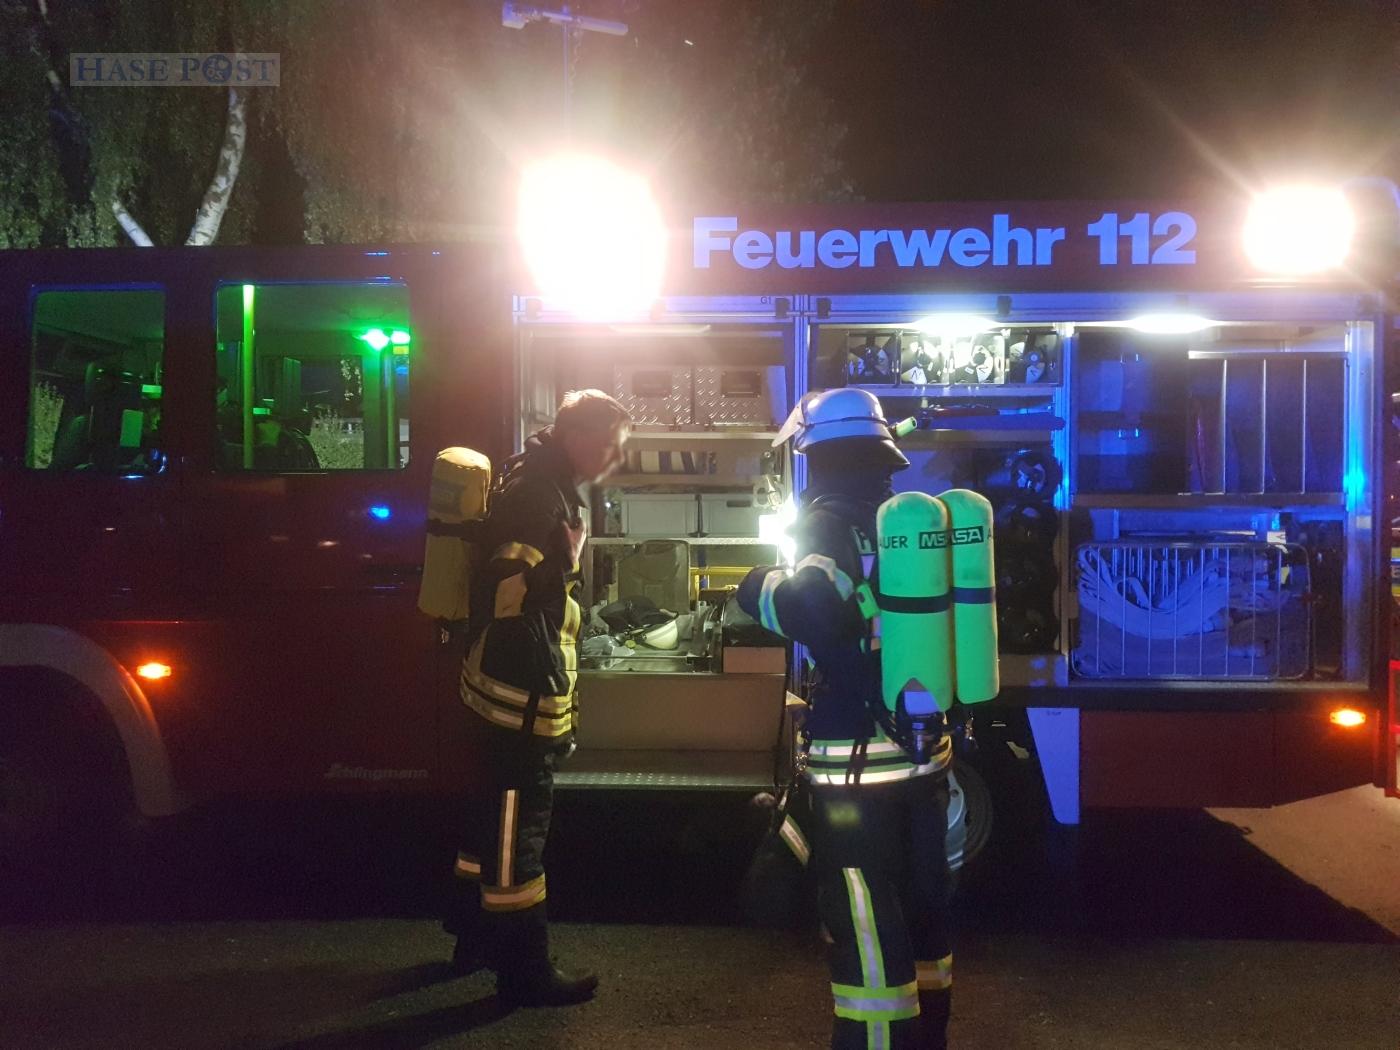 Wohnwagen brennt auf Meller Campingplatz ab, betrunkene Gaffer greifen Polizei an